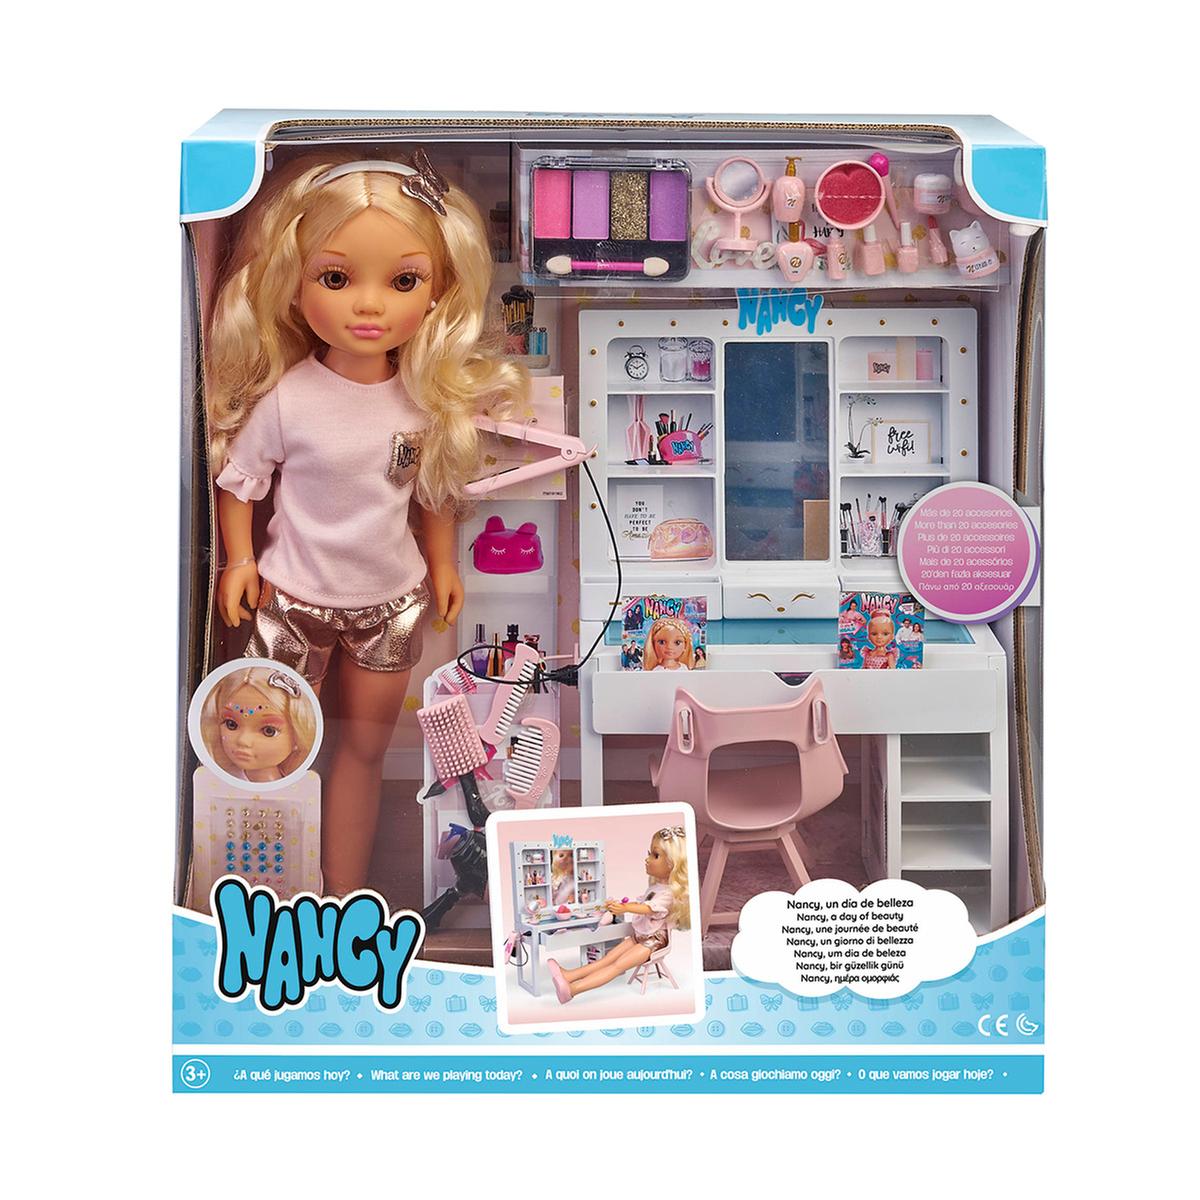 Nancy - Un Día de Belleza | Nancy | Toys"R"Us España